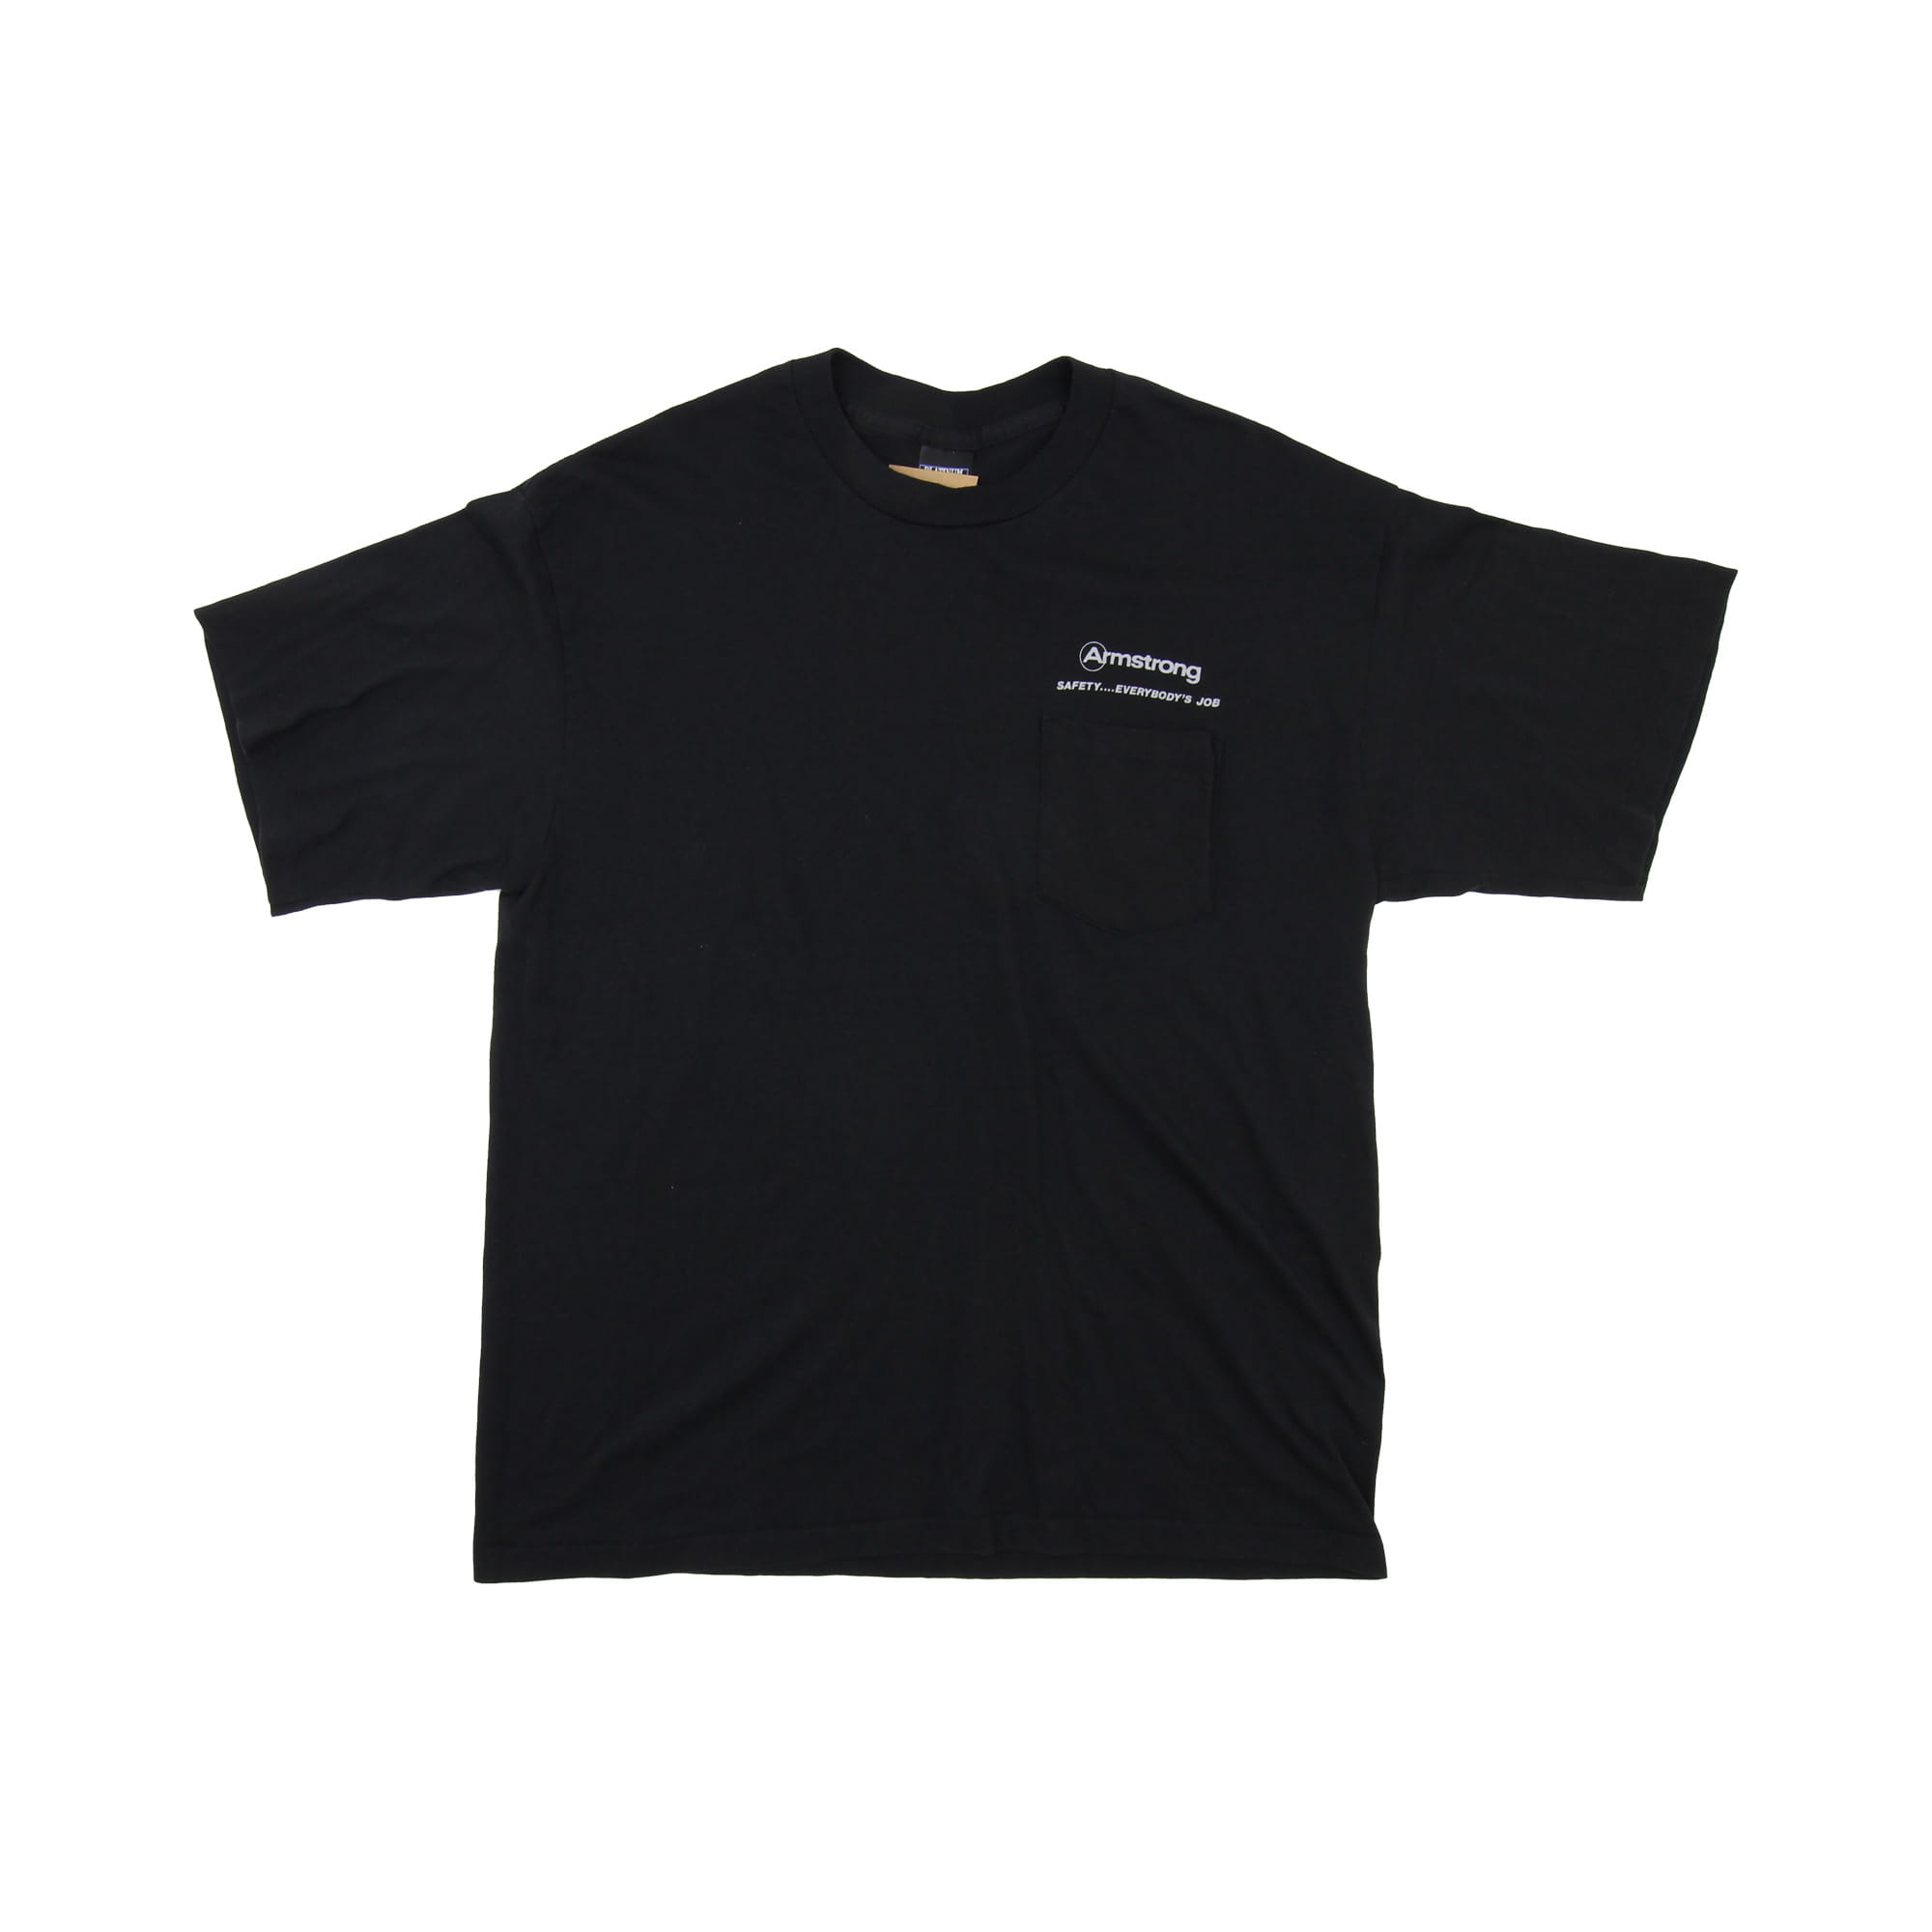 Armstrong  T-Shirt Black -  XL